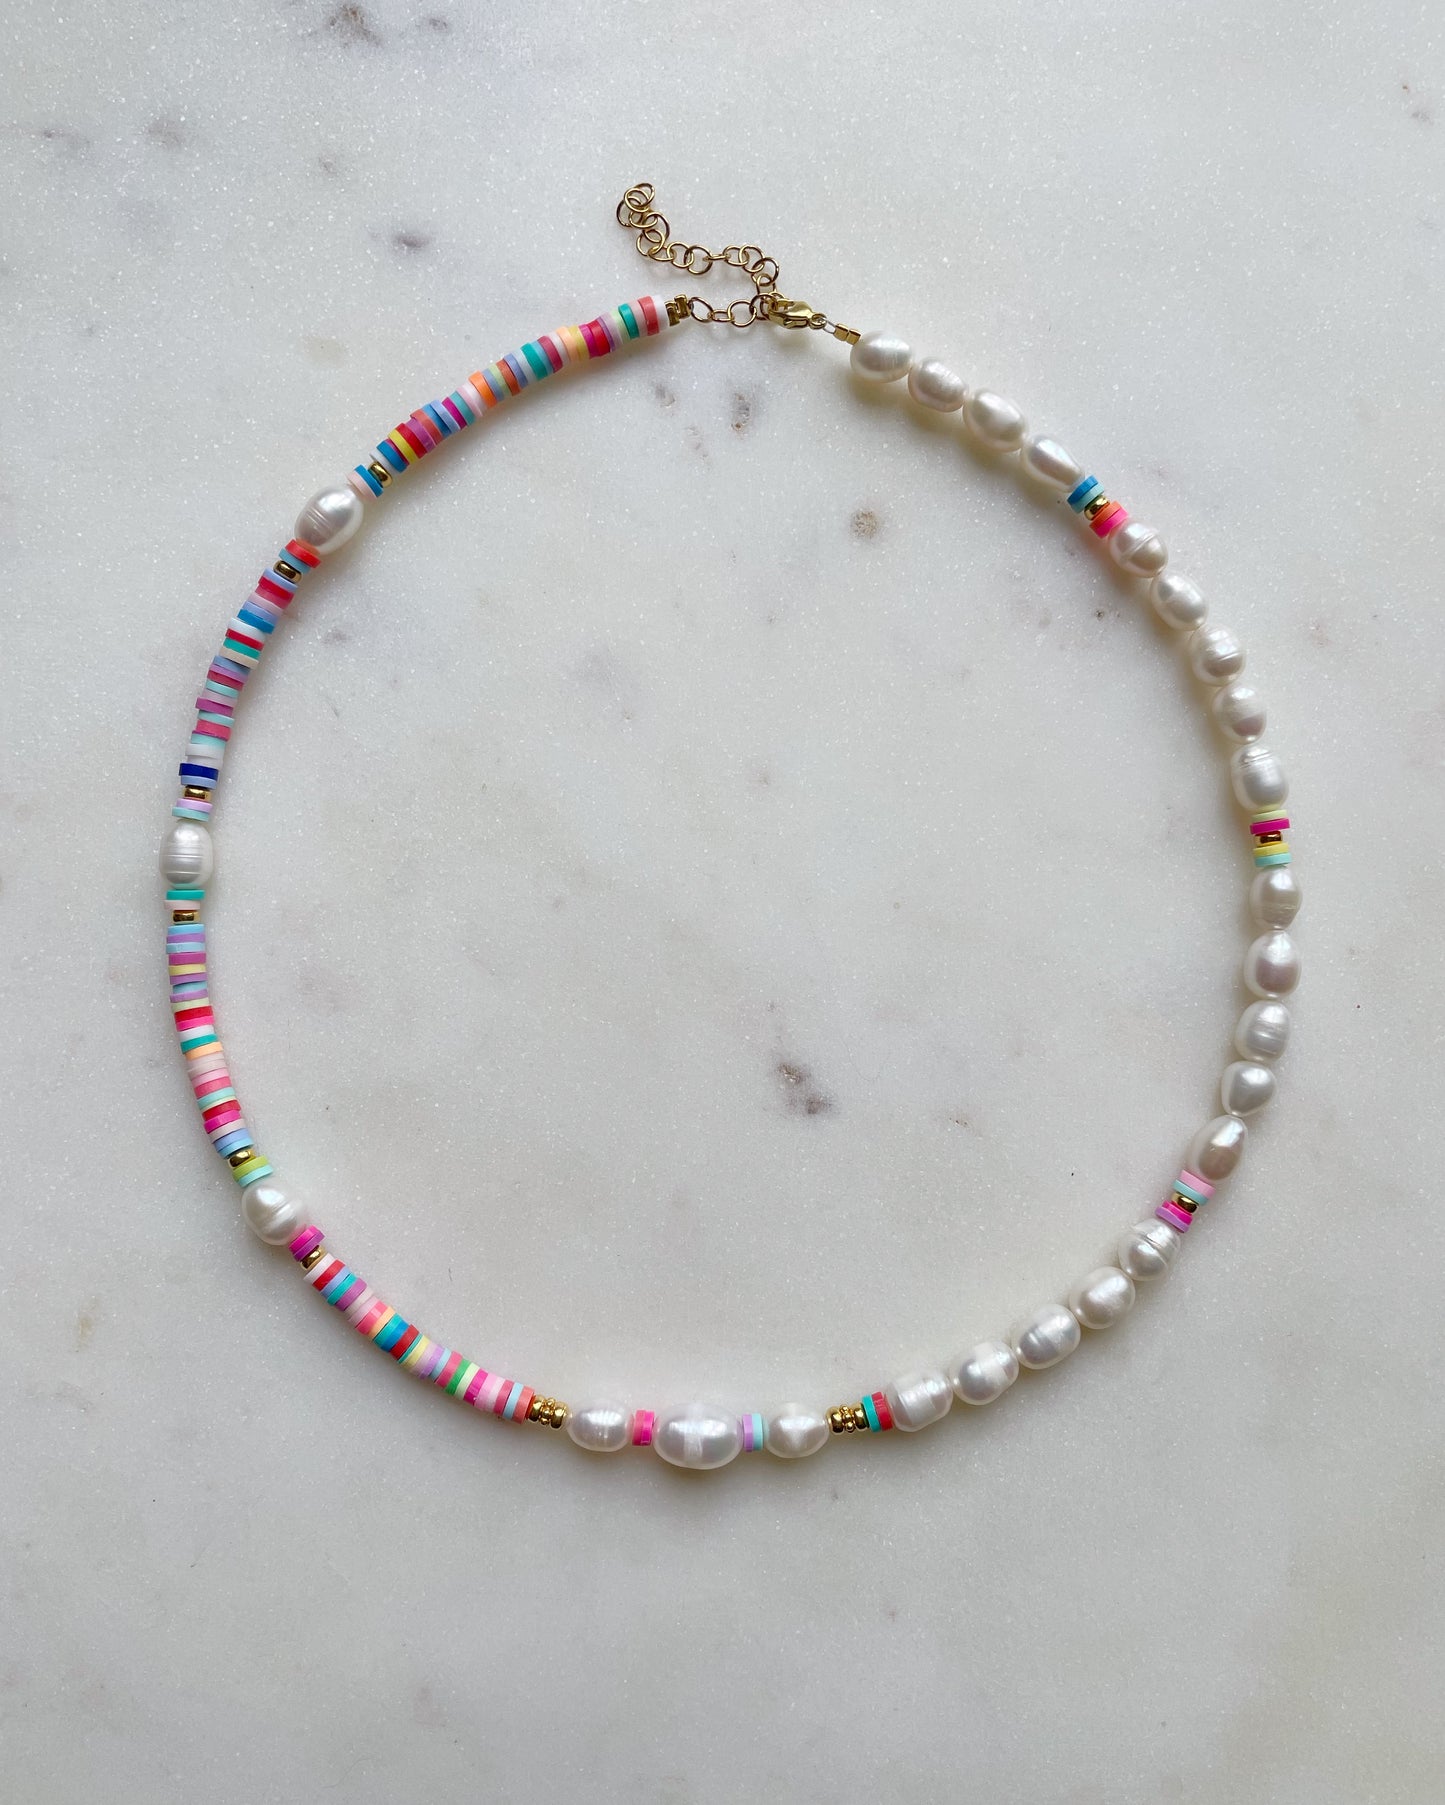 Samana Bay necklace